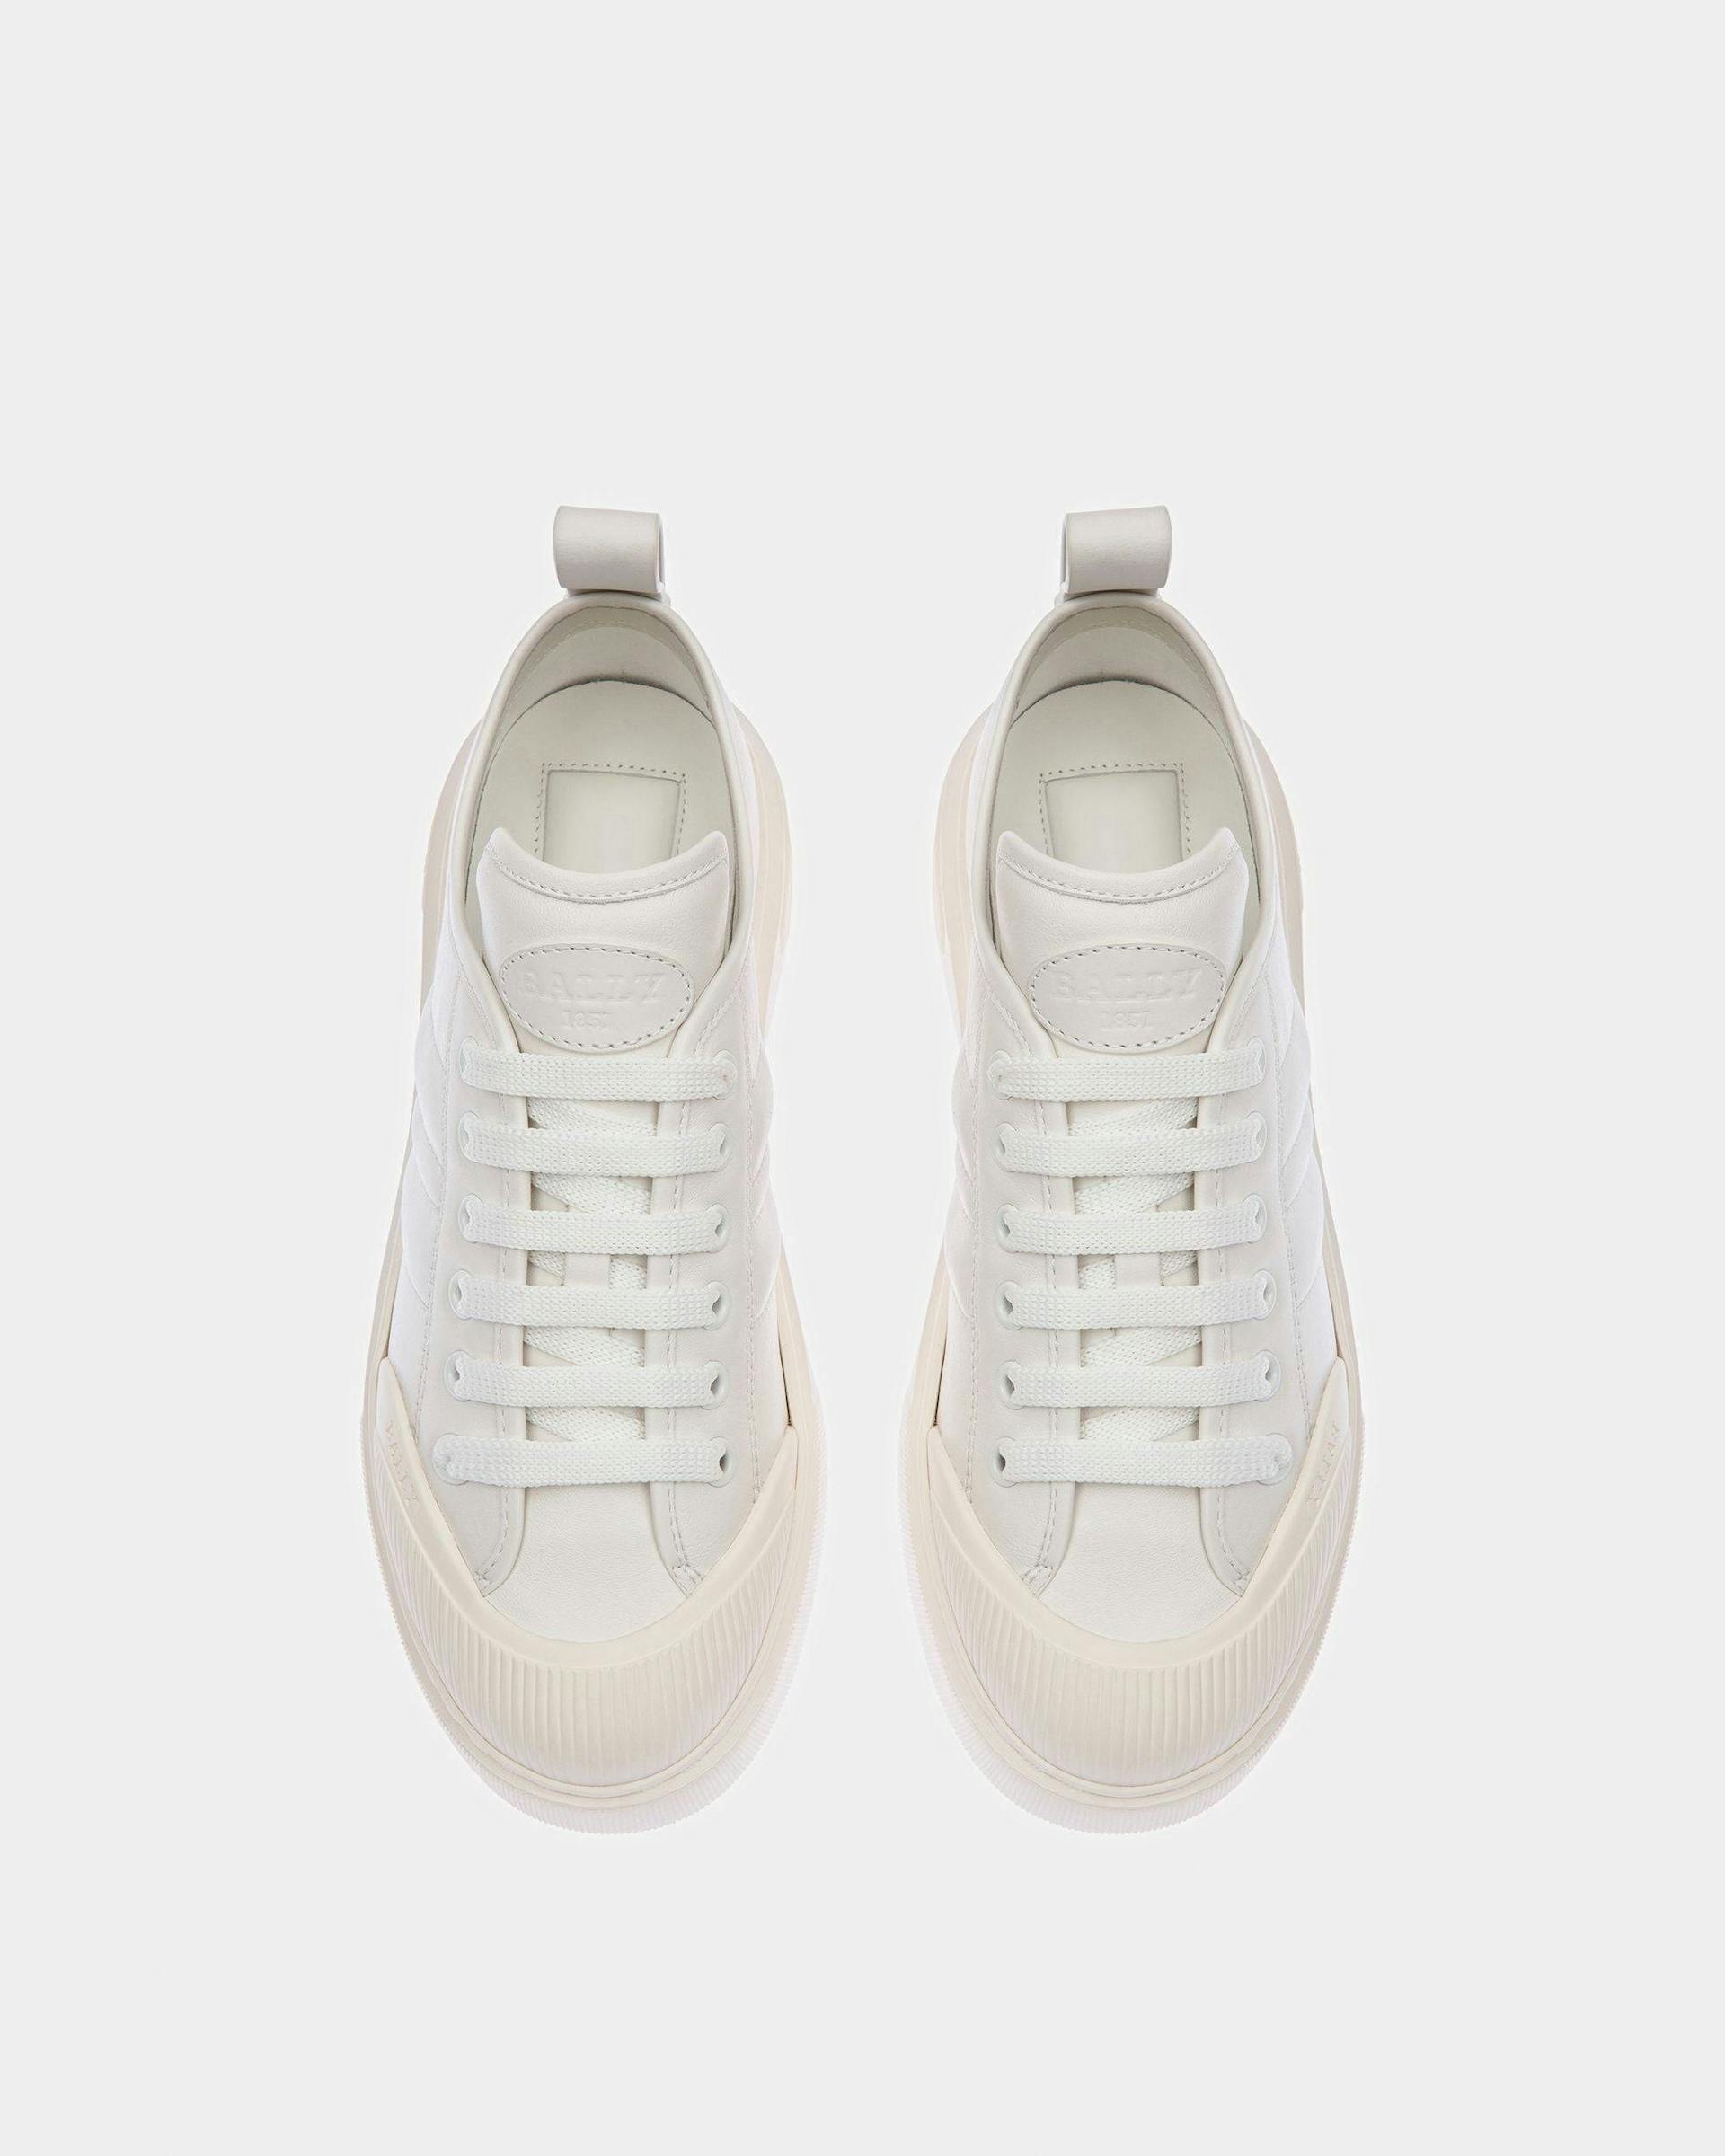 Medyn Leather Sneakers In White - Women's - Bally - 02